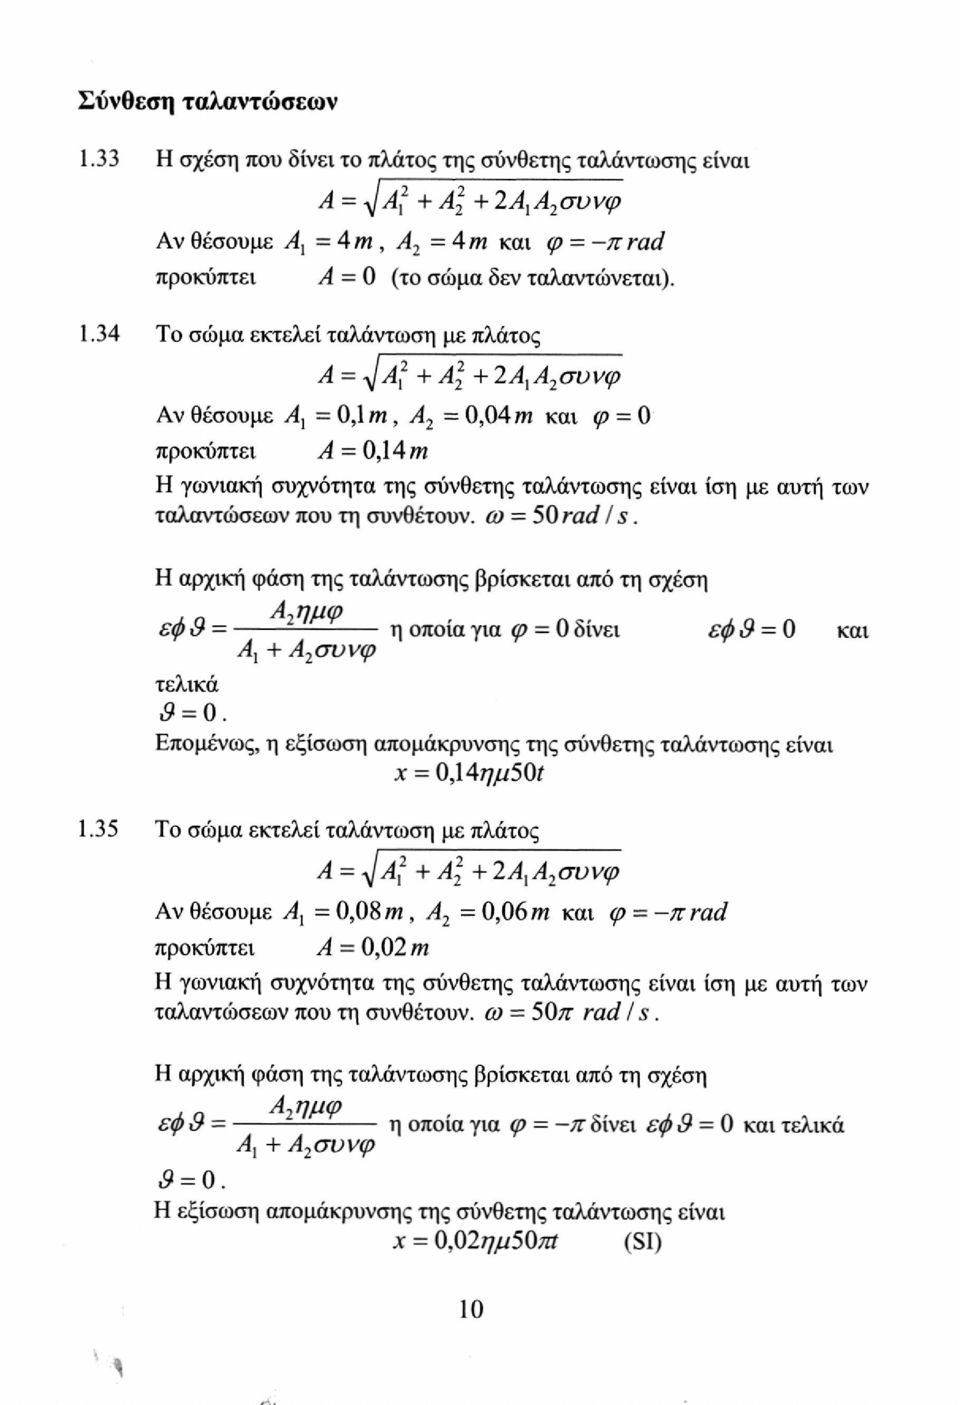 Η αρχική φάση της ταλάντωσης βρίσκεται από τη σχέση εφ ι9 = Α ι + Α συνφ η οπο{ α για φ = 0 δίνει εφ <9 = 0 και τελικά 3 = 0.